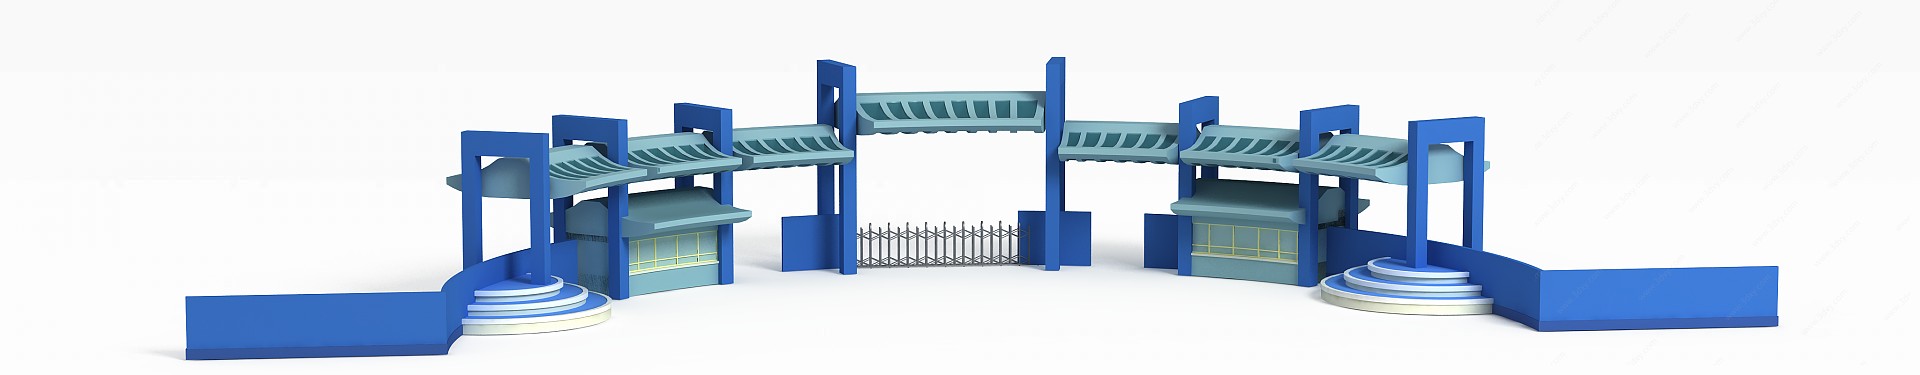 公园入口3D模型